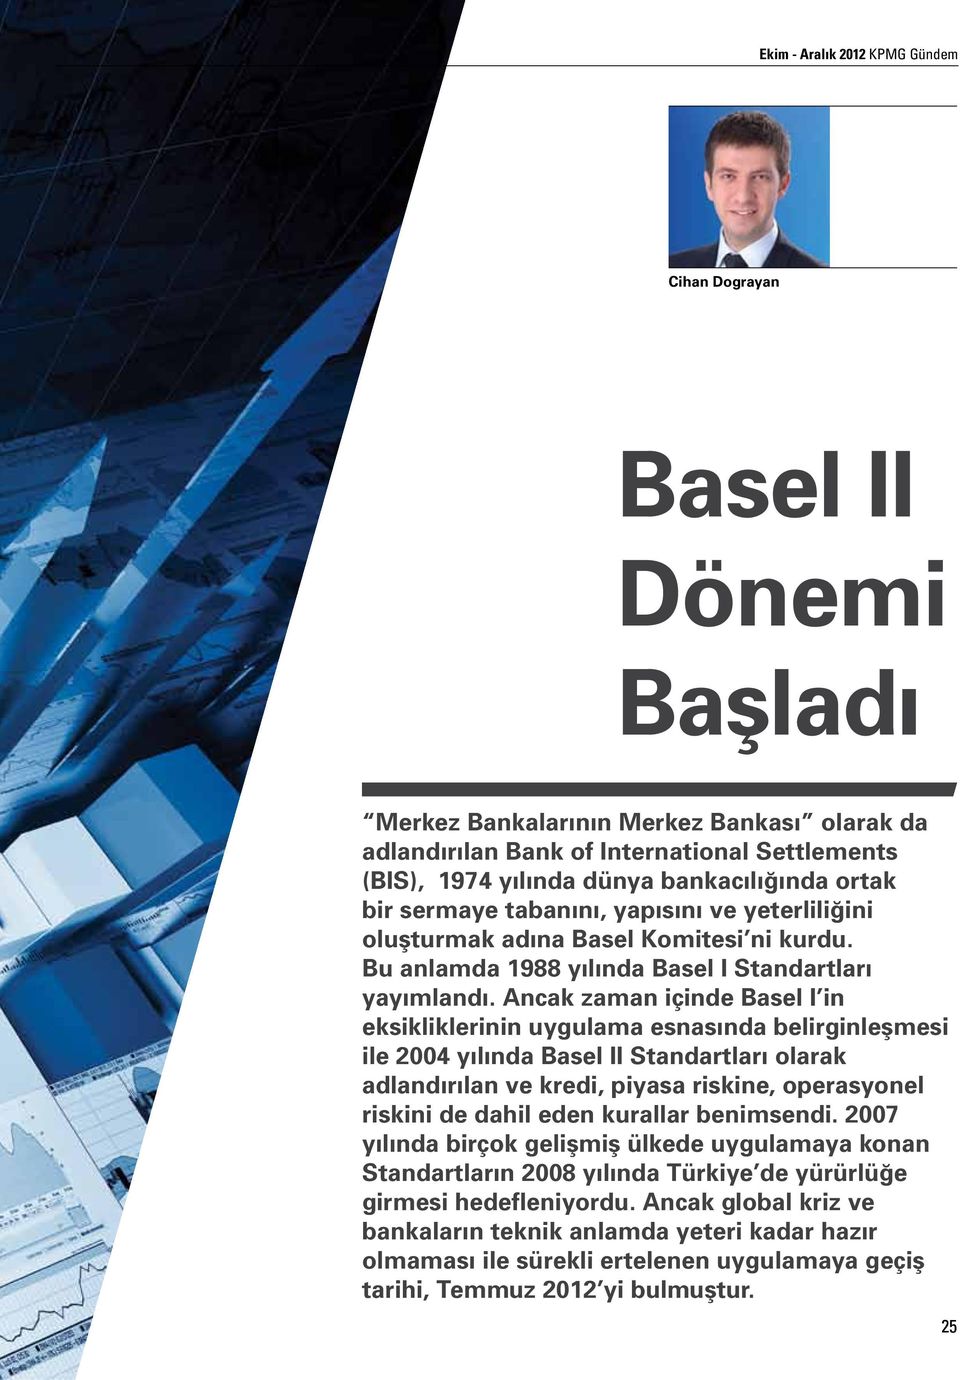 Ancak zaman içinde Basel I in eksikliklerinin uygulama esnasında belirginleşmesi ile 2004 yılında Basel II Standartları olarak adlandırılan ve kredi, piyasa riskine, operasyonel riskini de dahil eden